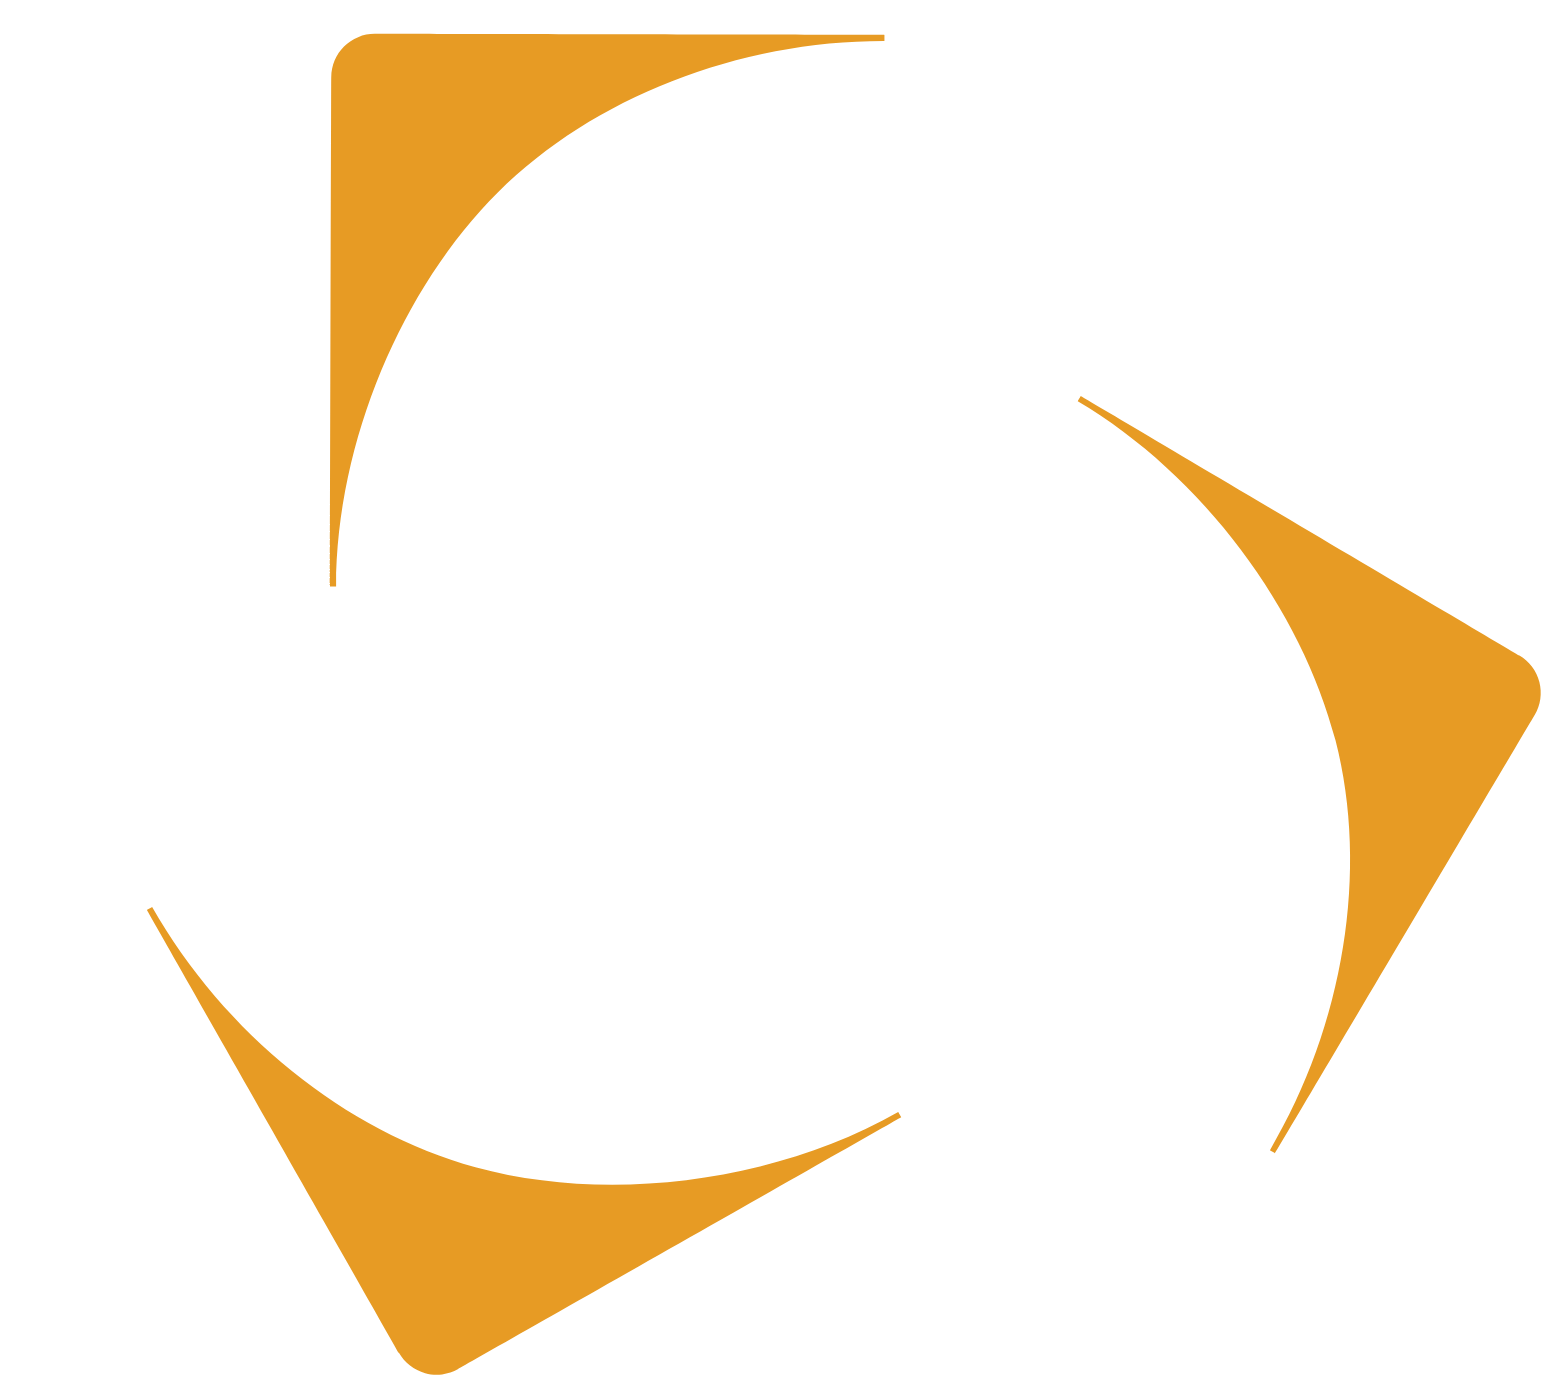 Kazatomprom logo pour fonds sombres (PNG transparent)